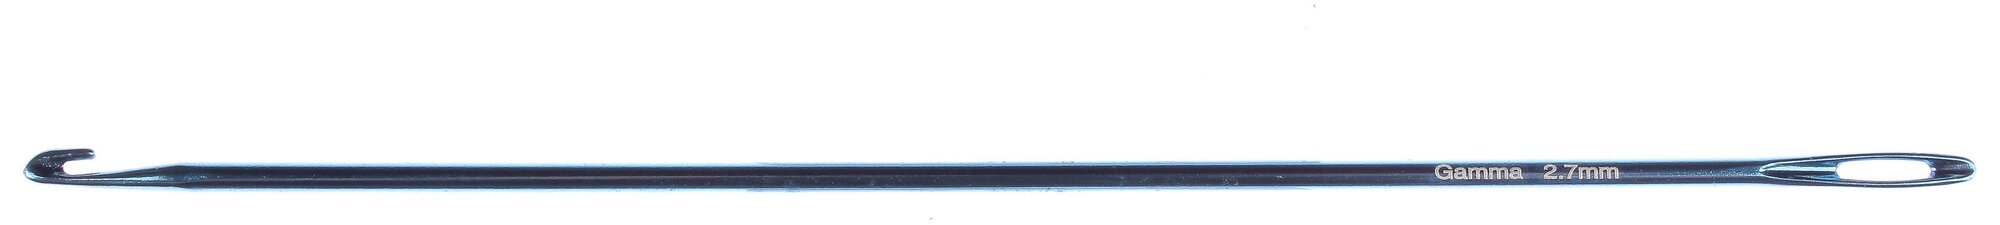 Крючок GAMMA для нукинга, металлический, голубой, d2,7мм, 16,5см, 1шт